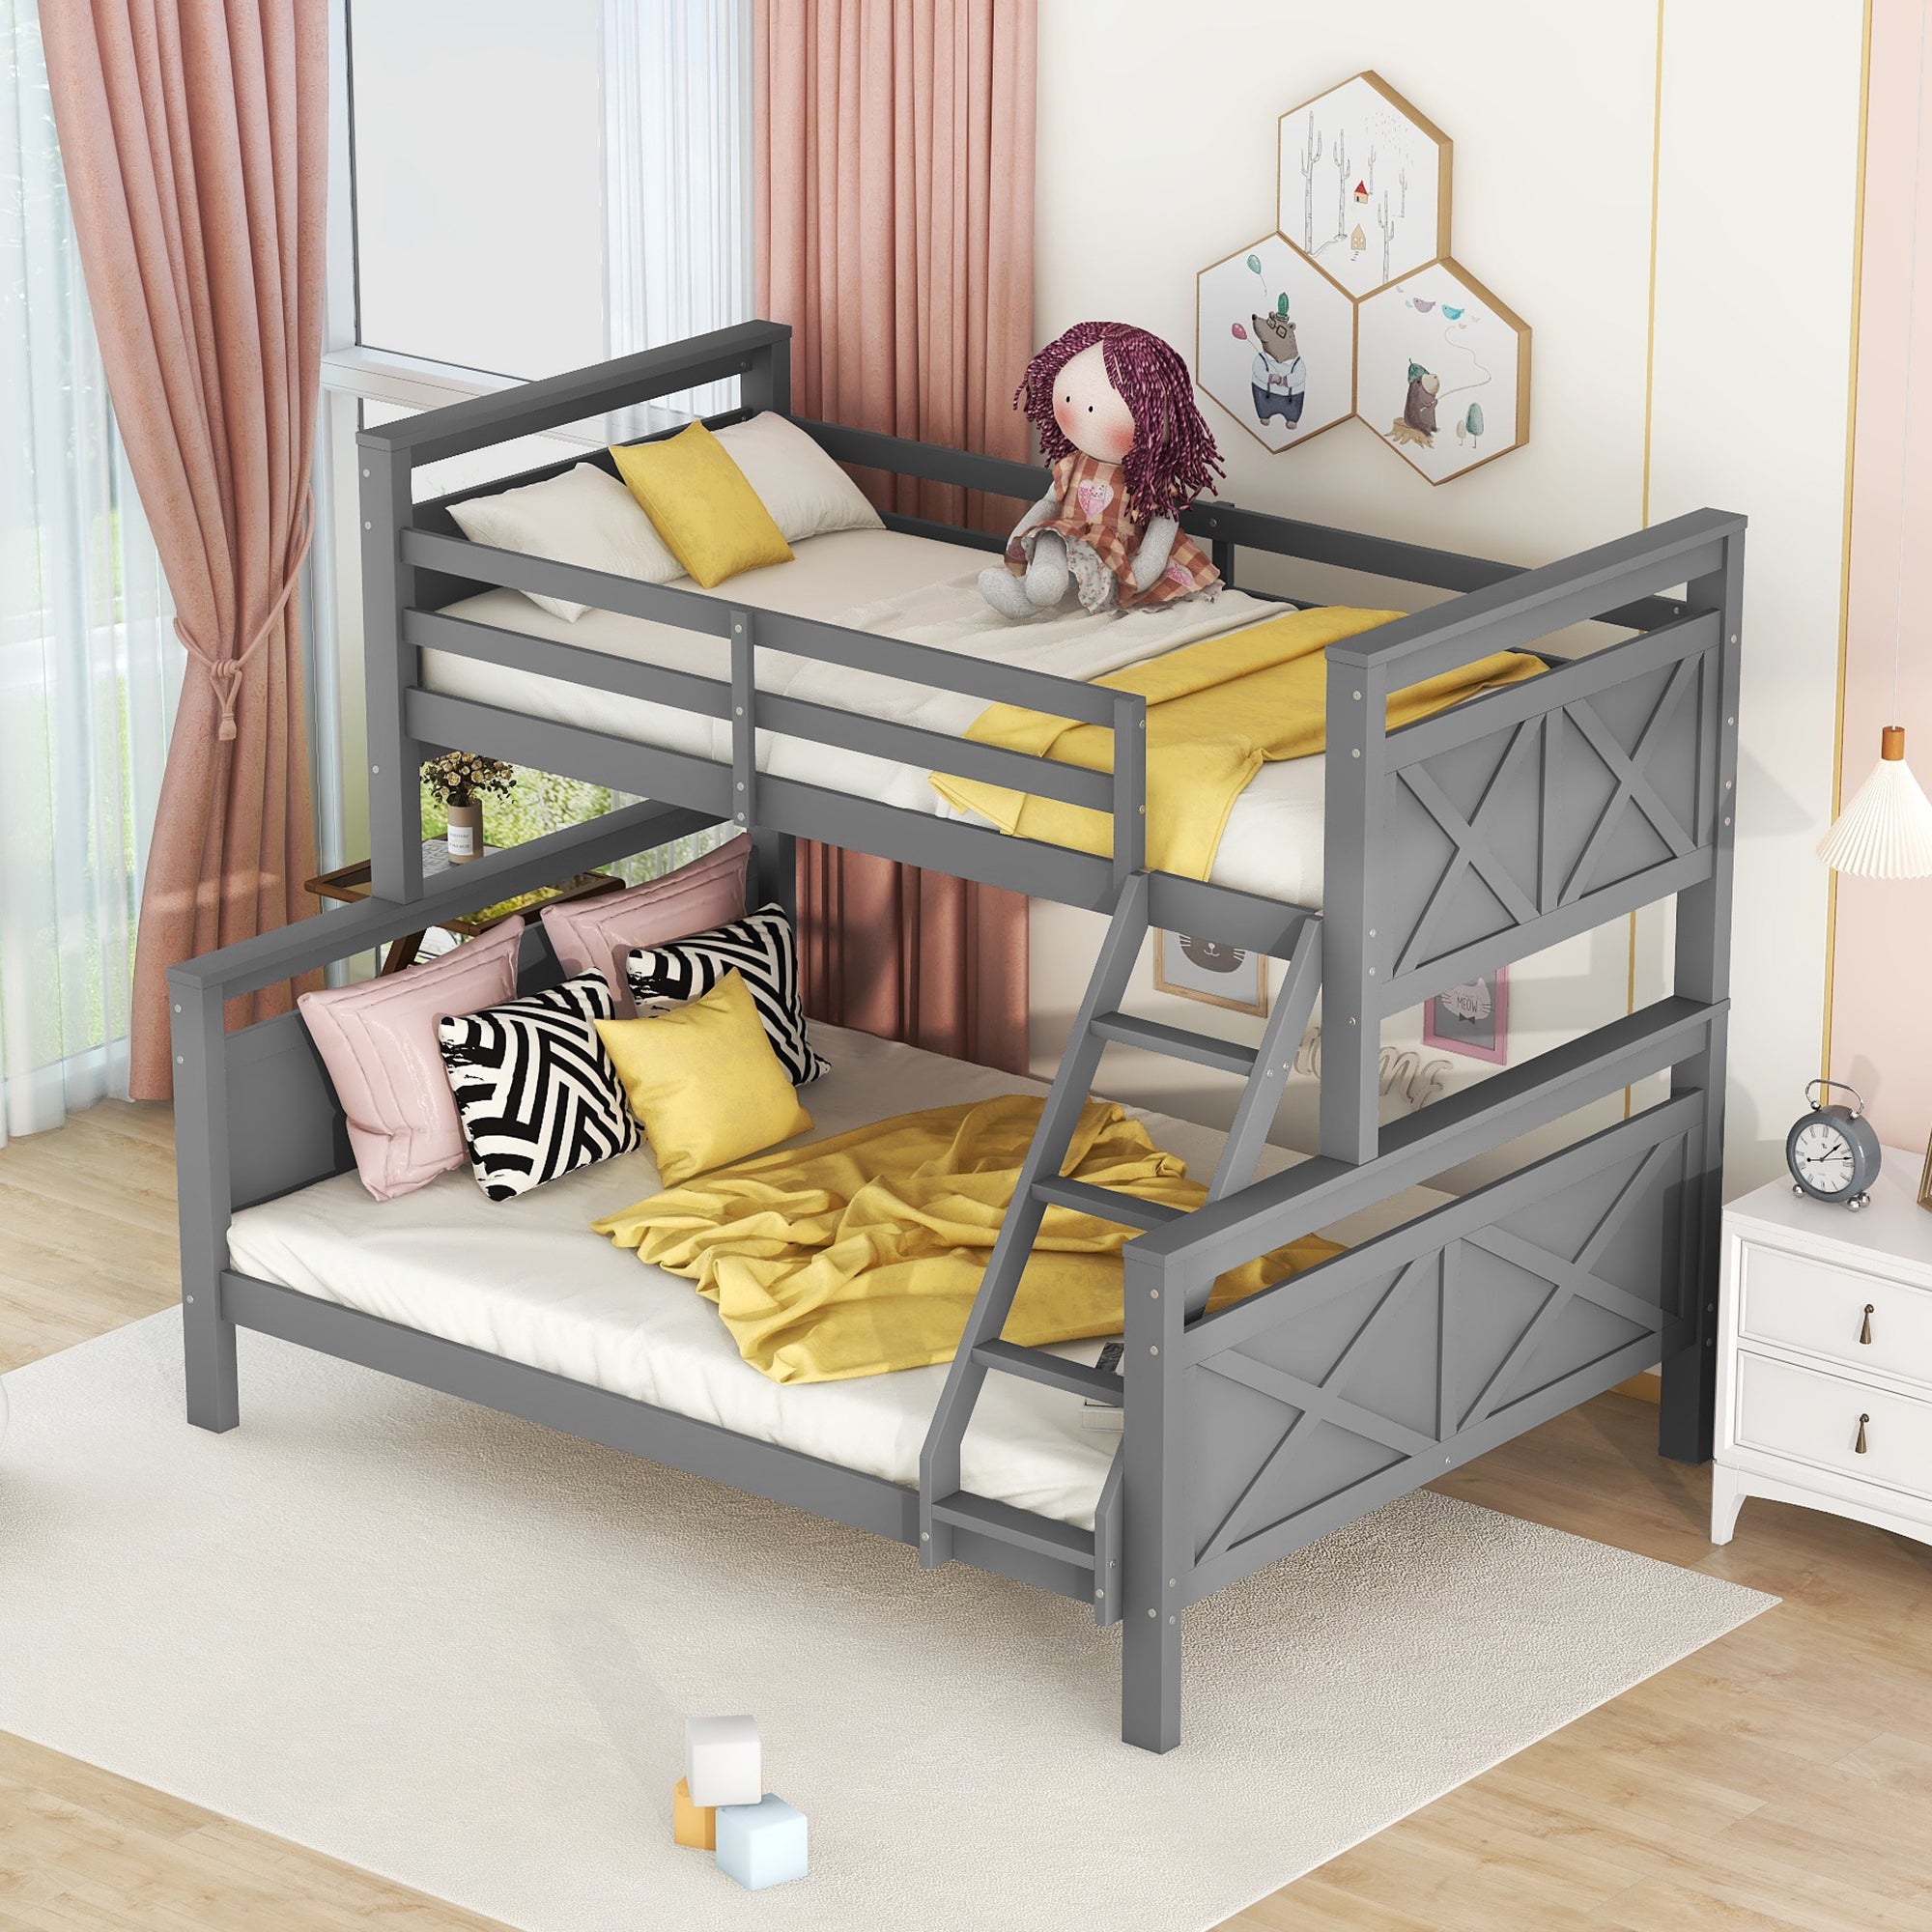 okwish Etagenbett für Kinder und Jugendliche, umbaubar in 2 separate Betten, mit Leiter und Sicherheitsgeländer, grau (oben: 90x200 cm, unten: 140*200 cm)